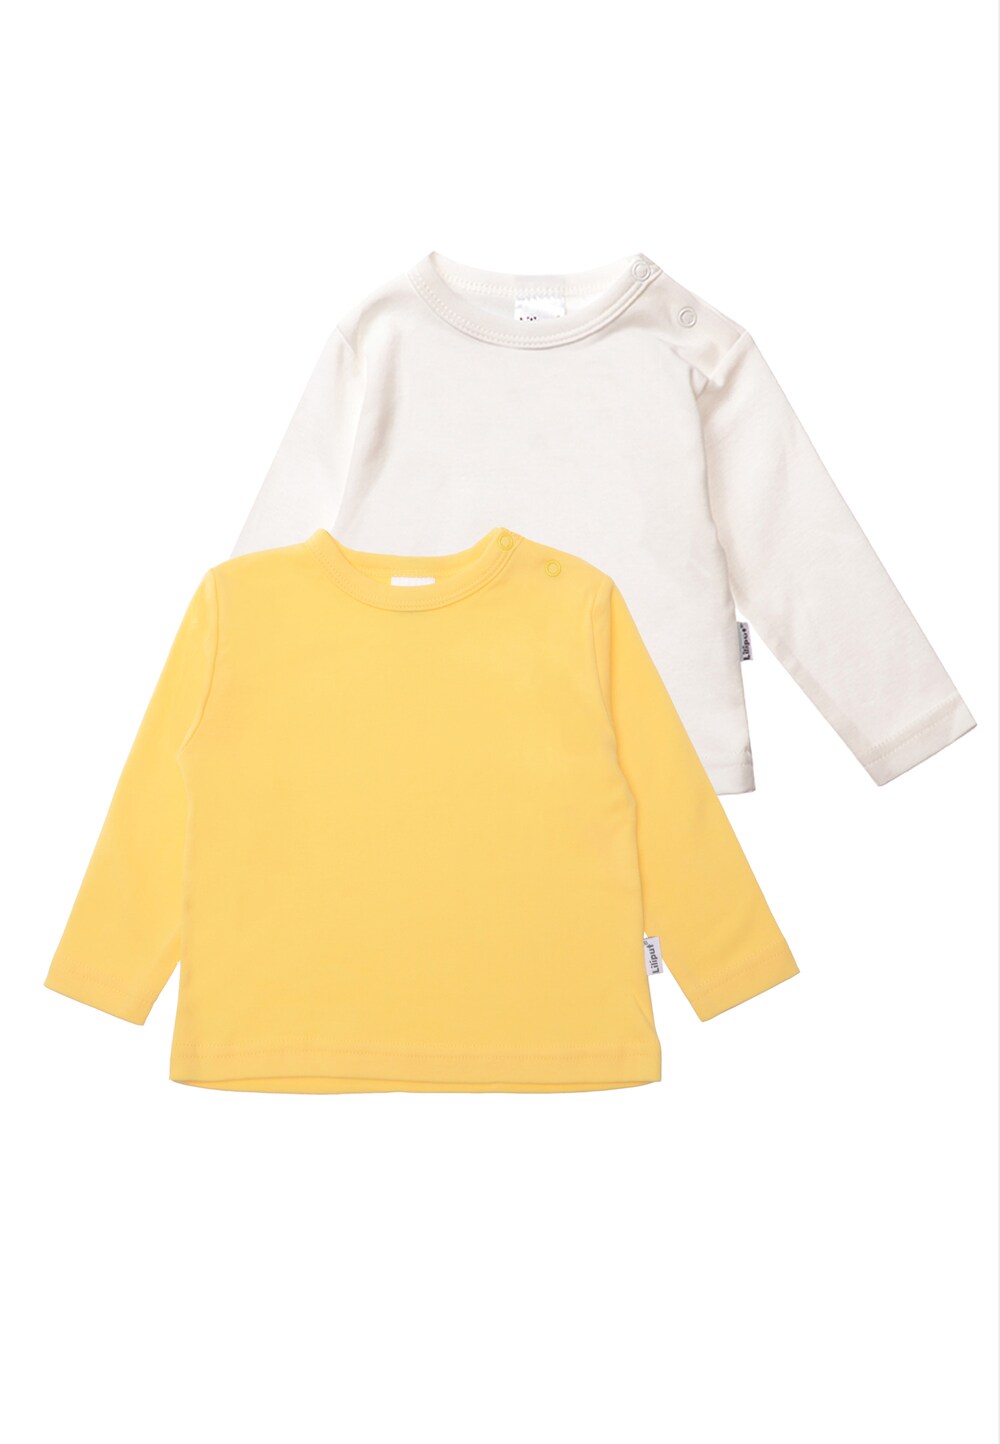 Рубашка LILIPUT, желтый/белый